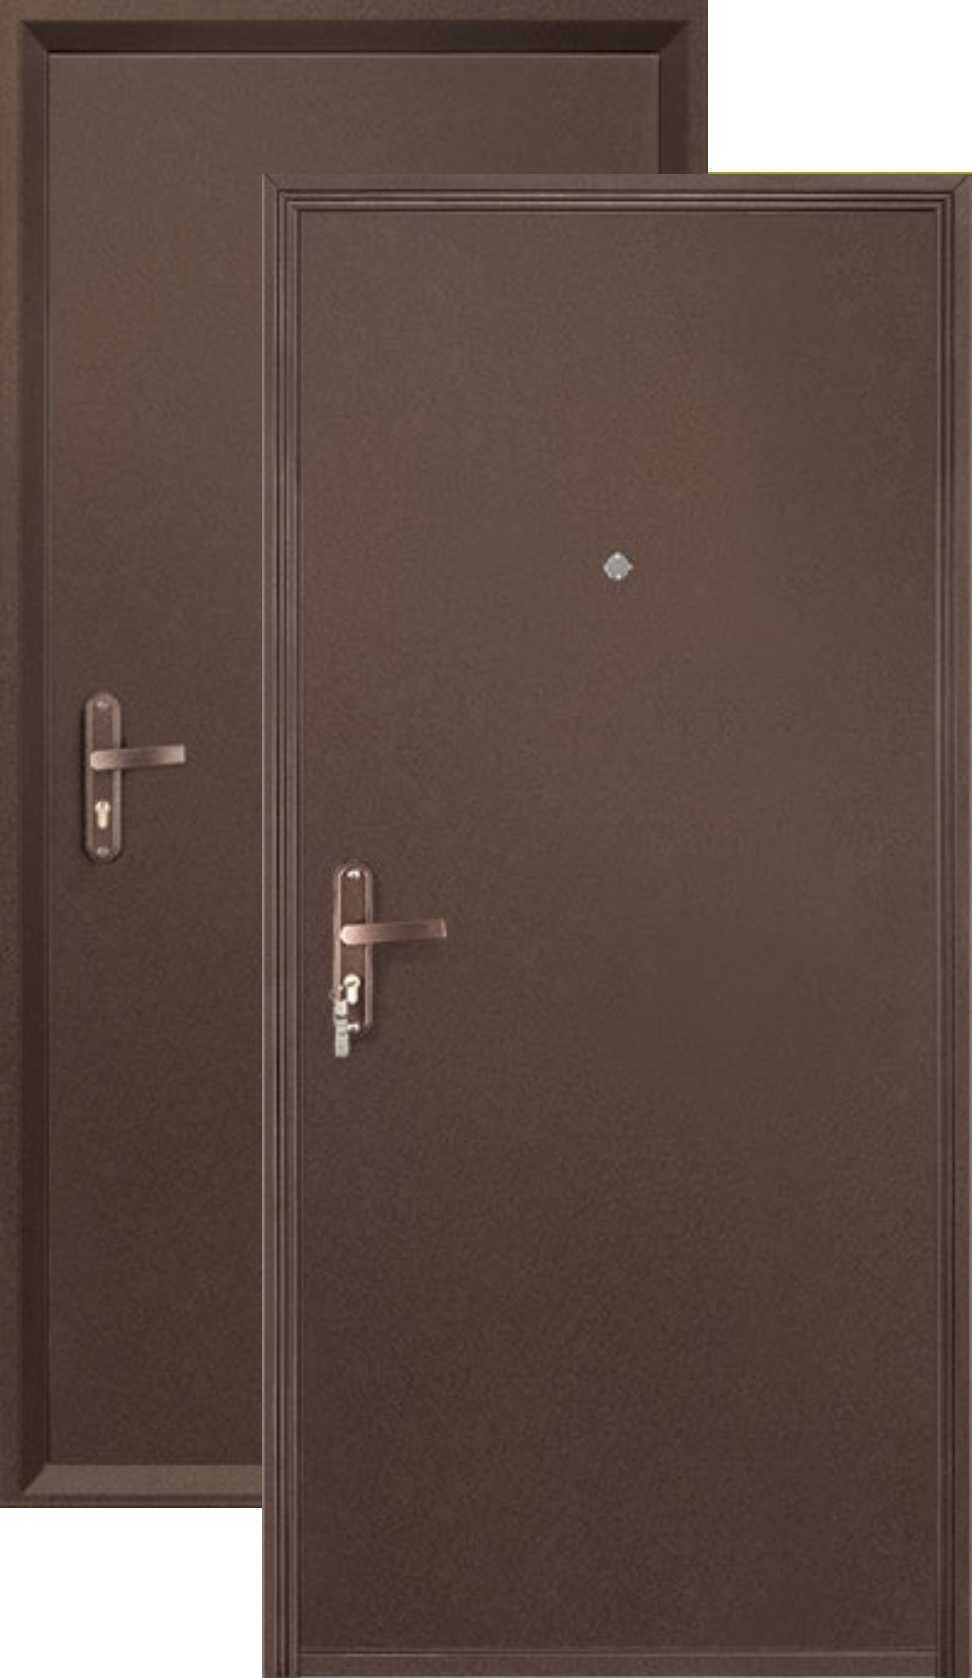 Внутренняя металлическая дверь купить. Дверь профи мет мет Промет. Металлическая дверь профи Промет. Дверь входная стальная Промет профи BMD, медный антик, 850*2050мм, правая. Дверь профи BMD-2050/850/R антик медь.